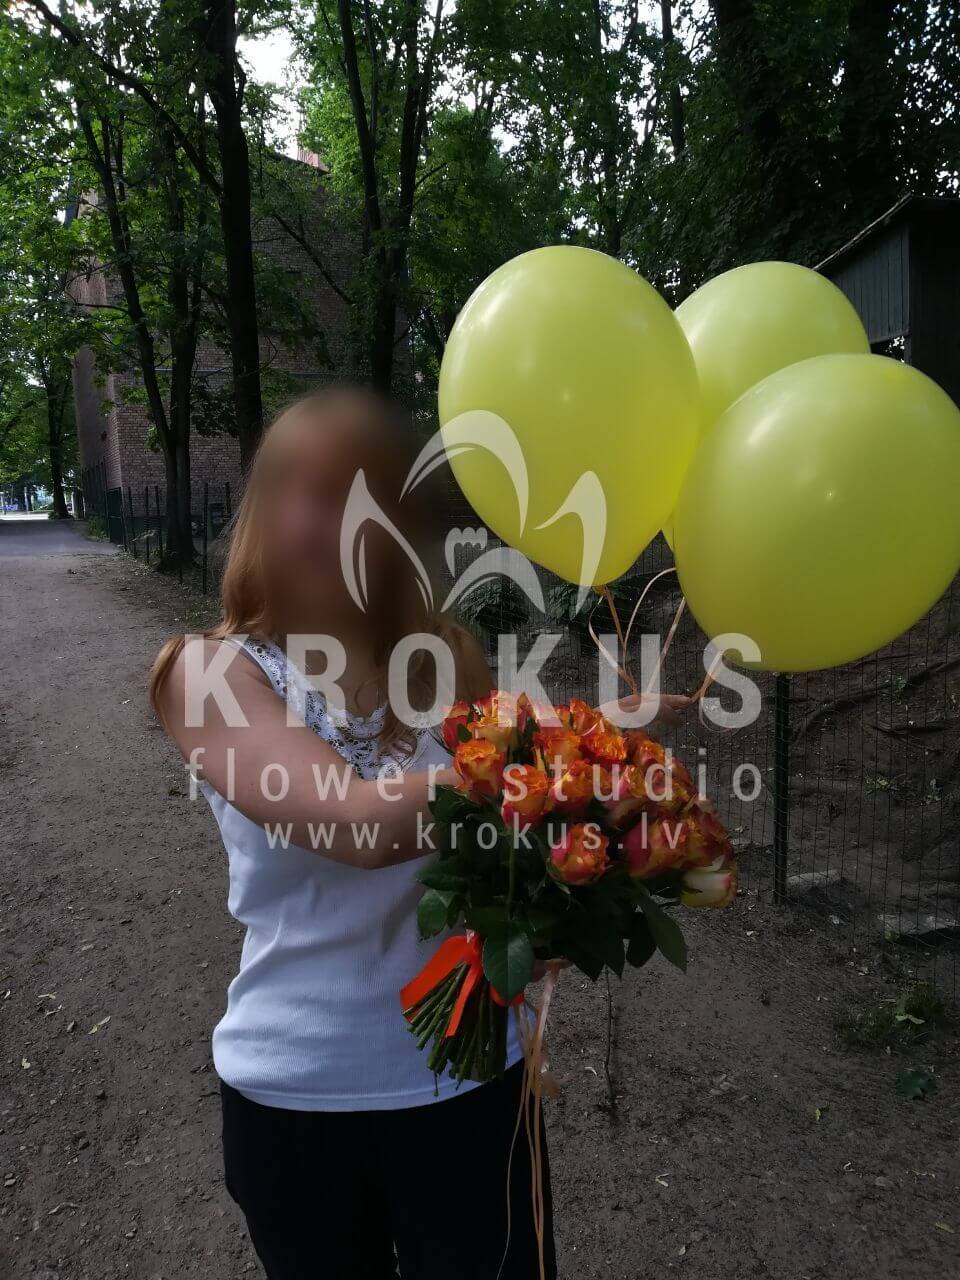 Доставка цветов в город Рига (оранжевые розы)